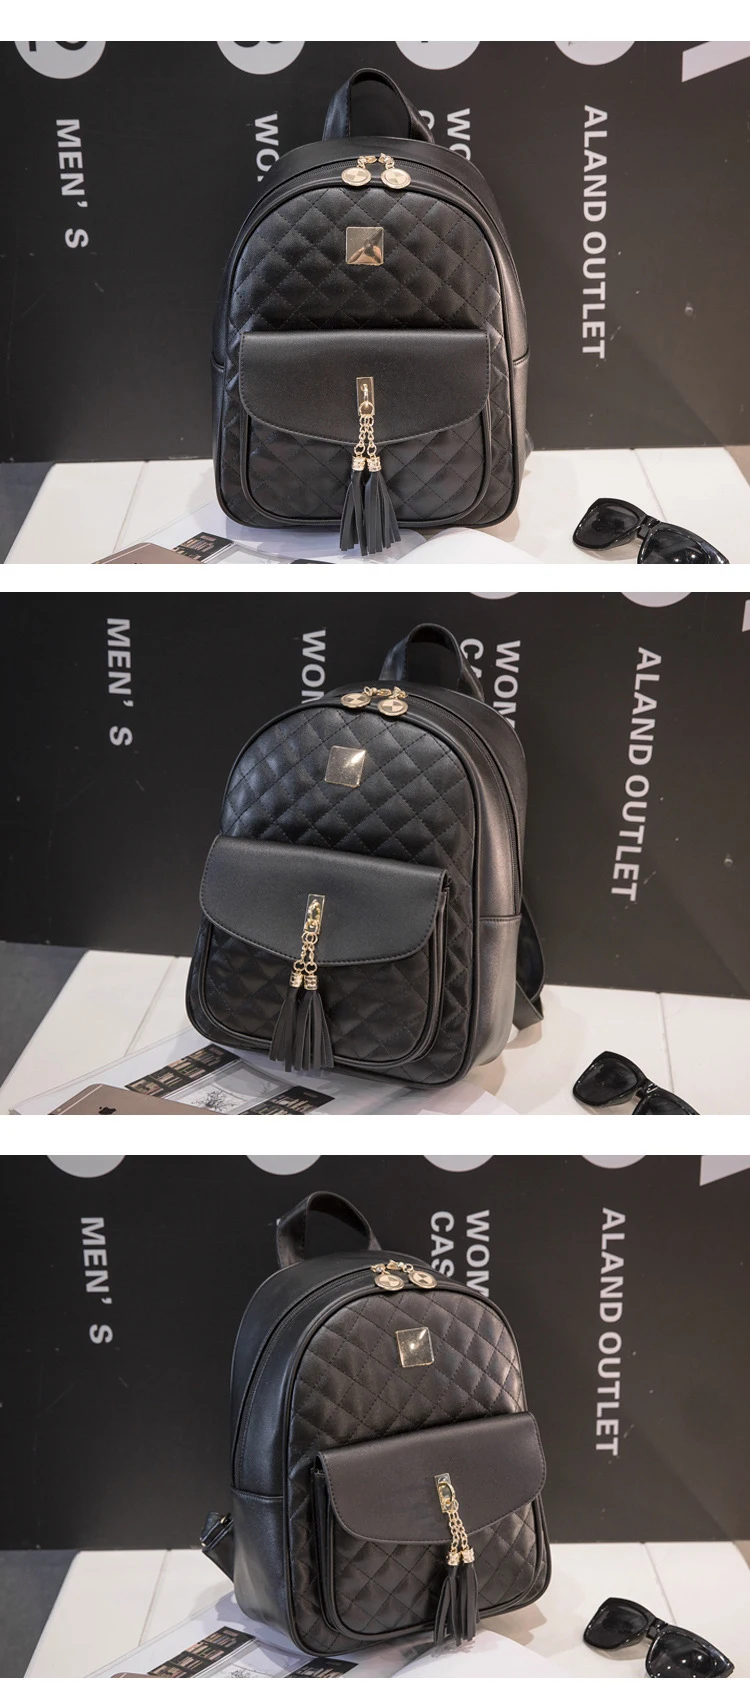 Ромбовидная решетка, женский рюкзак, корейский стиль, для путешествий, для девочек, рюкзаки для студентов, школьная сумка, мягкая сумка на плечо, черные рюкзаки